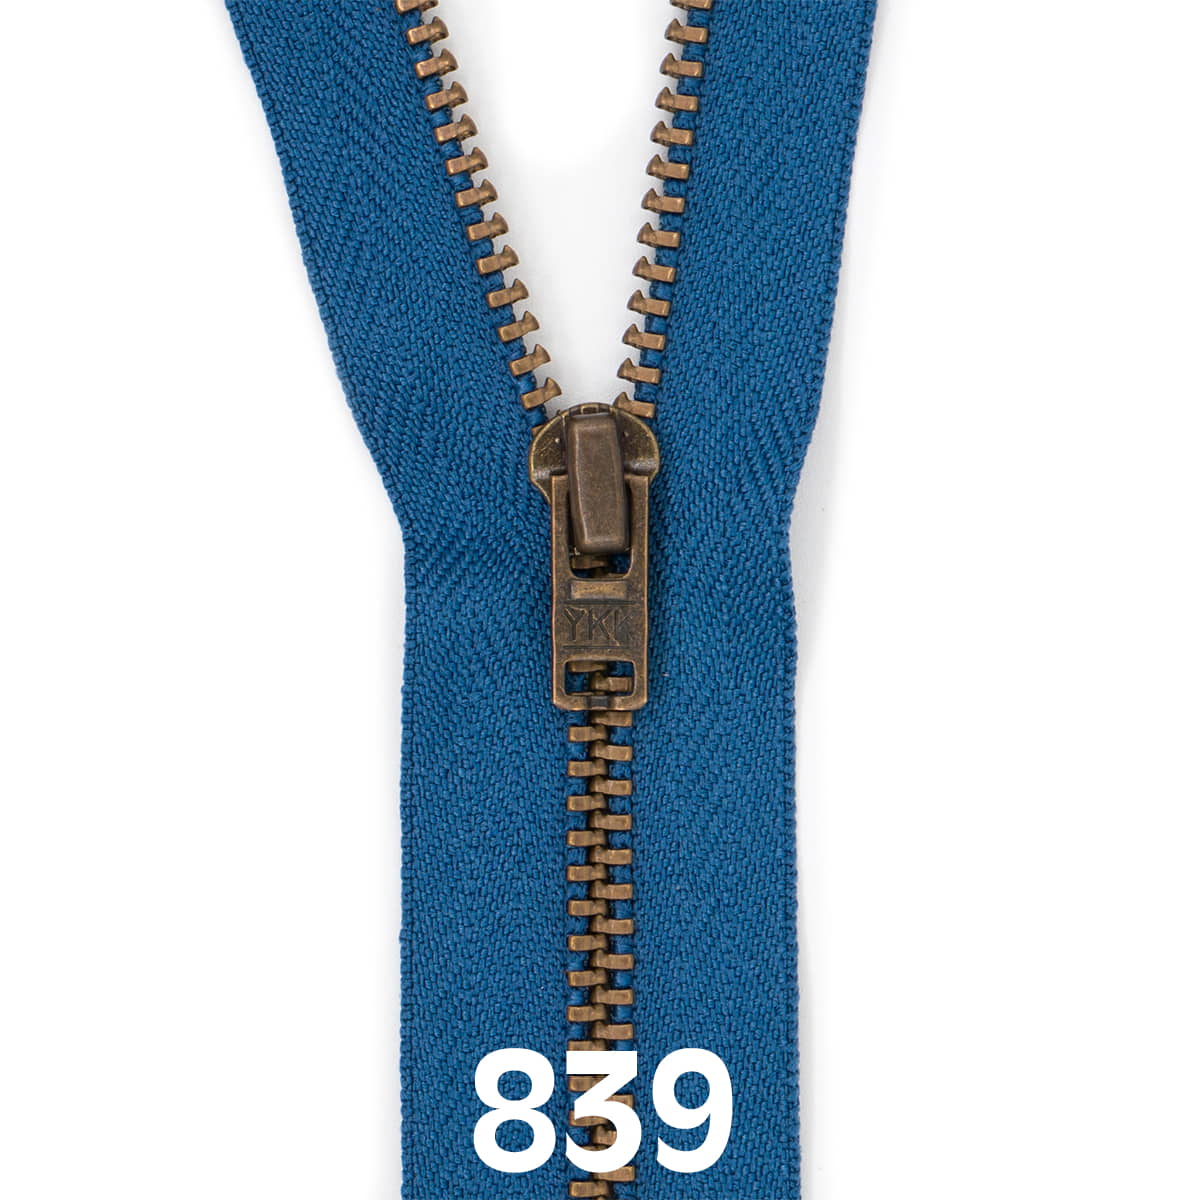 Broek rits metaal | brons fijn | 20 cm | YKK | 839 jeans blauw Rits RITS-BROEK-BRONZE-4.5-20CM-839-JEANS-BLUE - Fourniturenkraam.nl